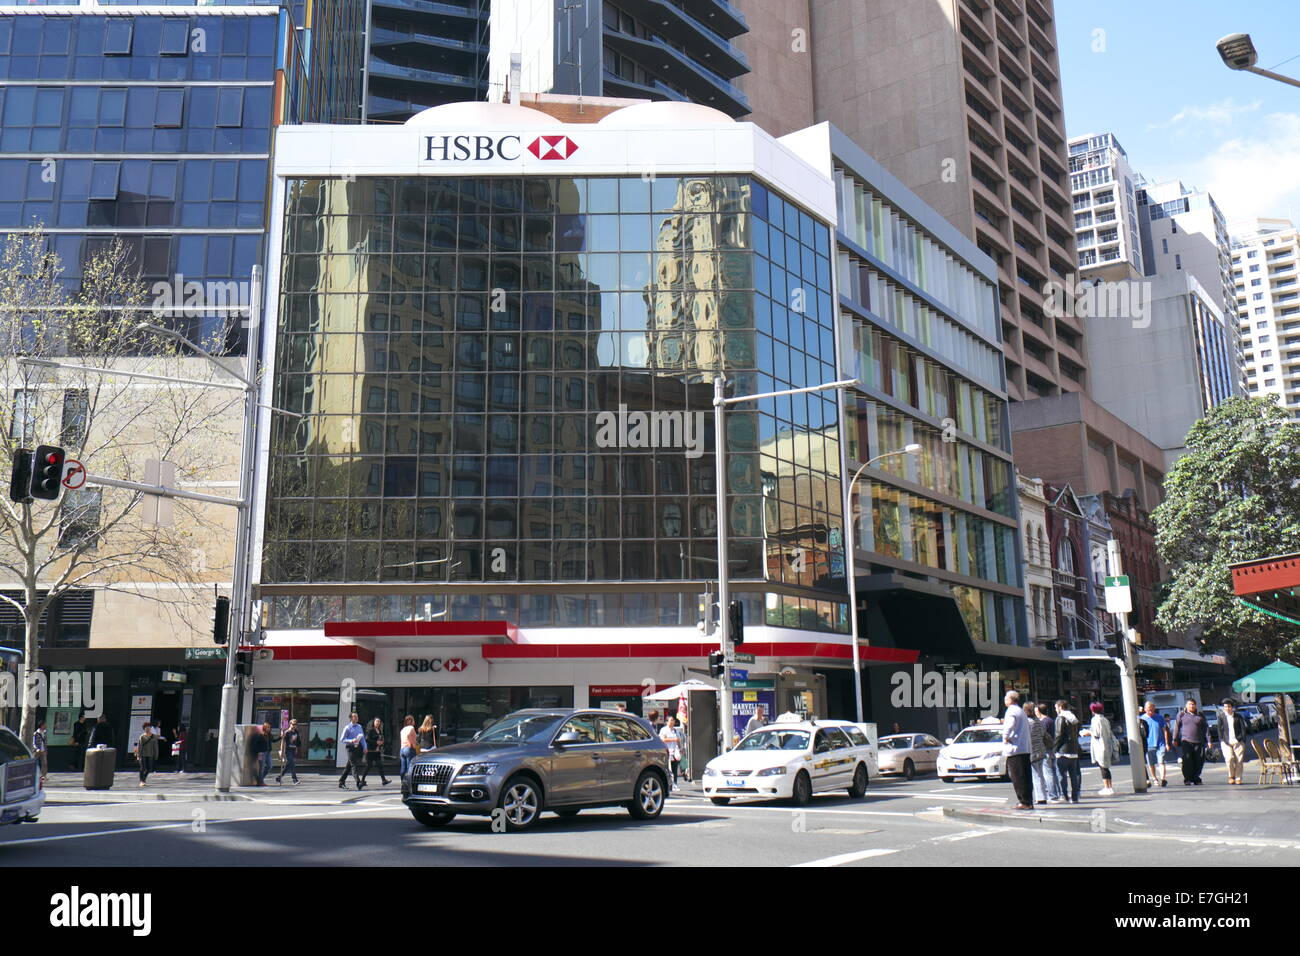 Direction générale de la banque HSBC sur l'extrémité sud de la rue George à Sydney Central Business District, Australie Banque D'Images